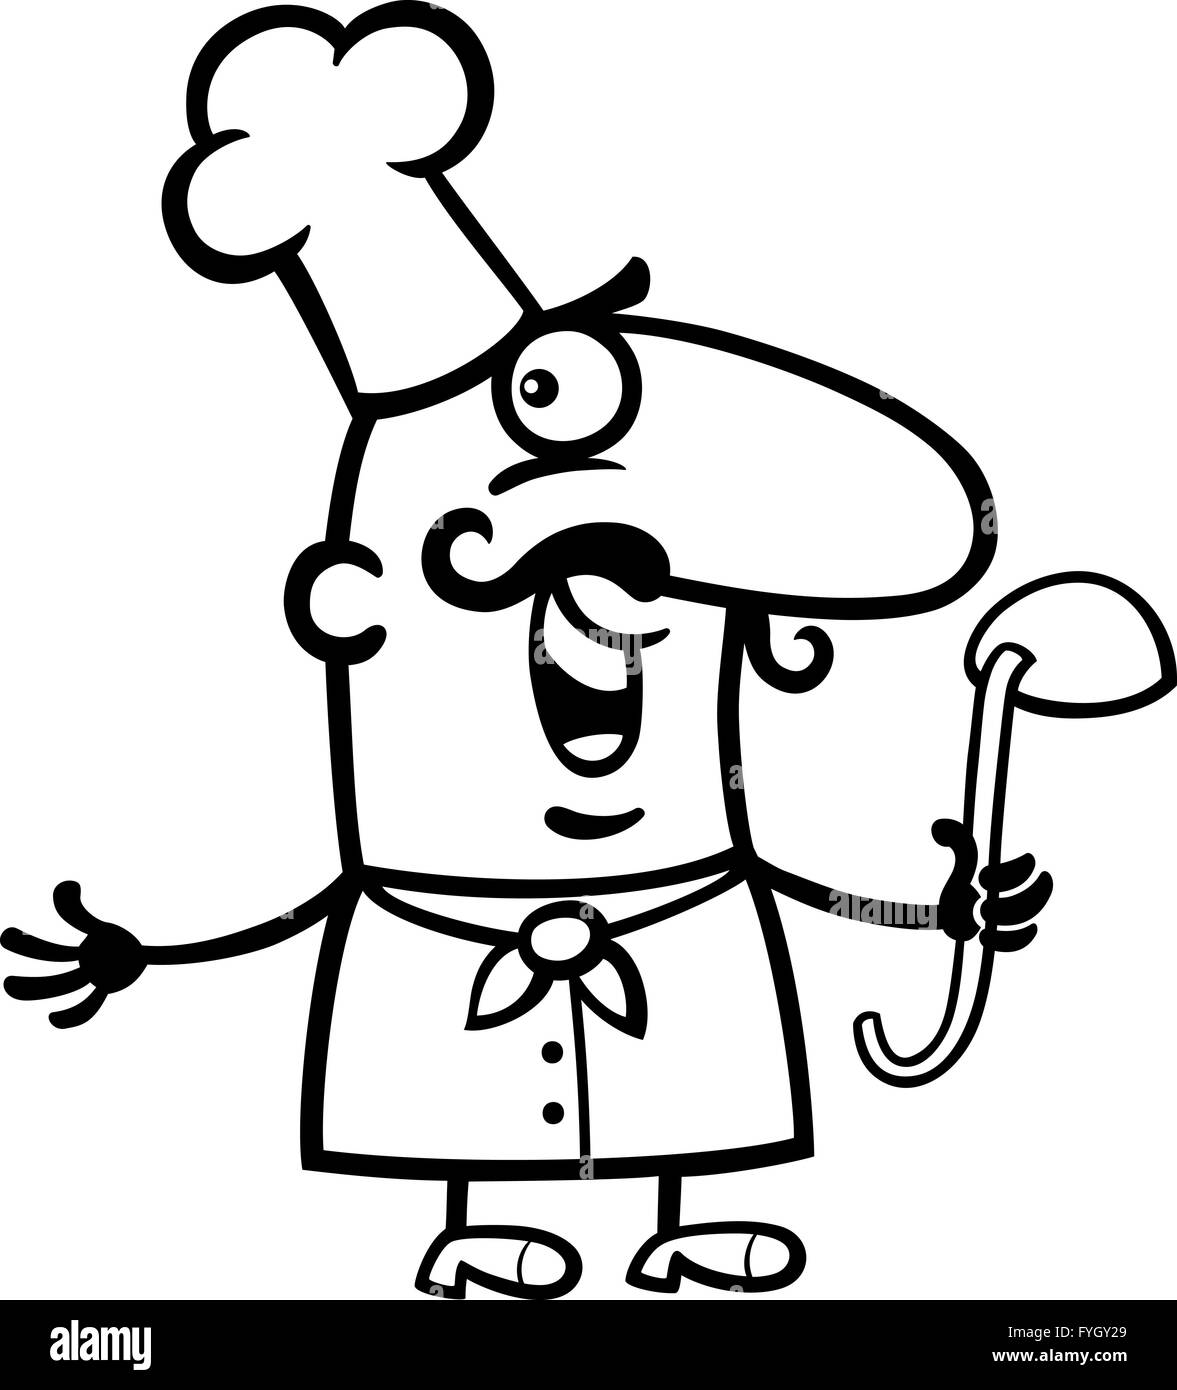 Cuisinier ou chef avec louche cartoon illustration Banque D'Images